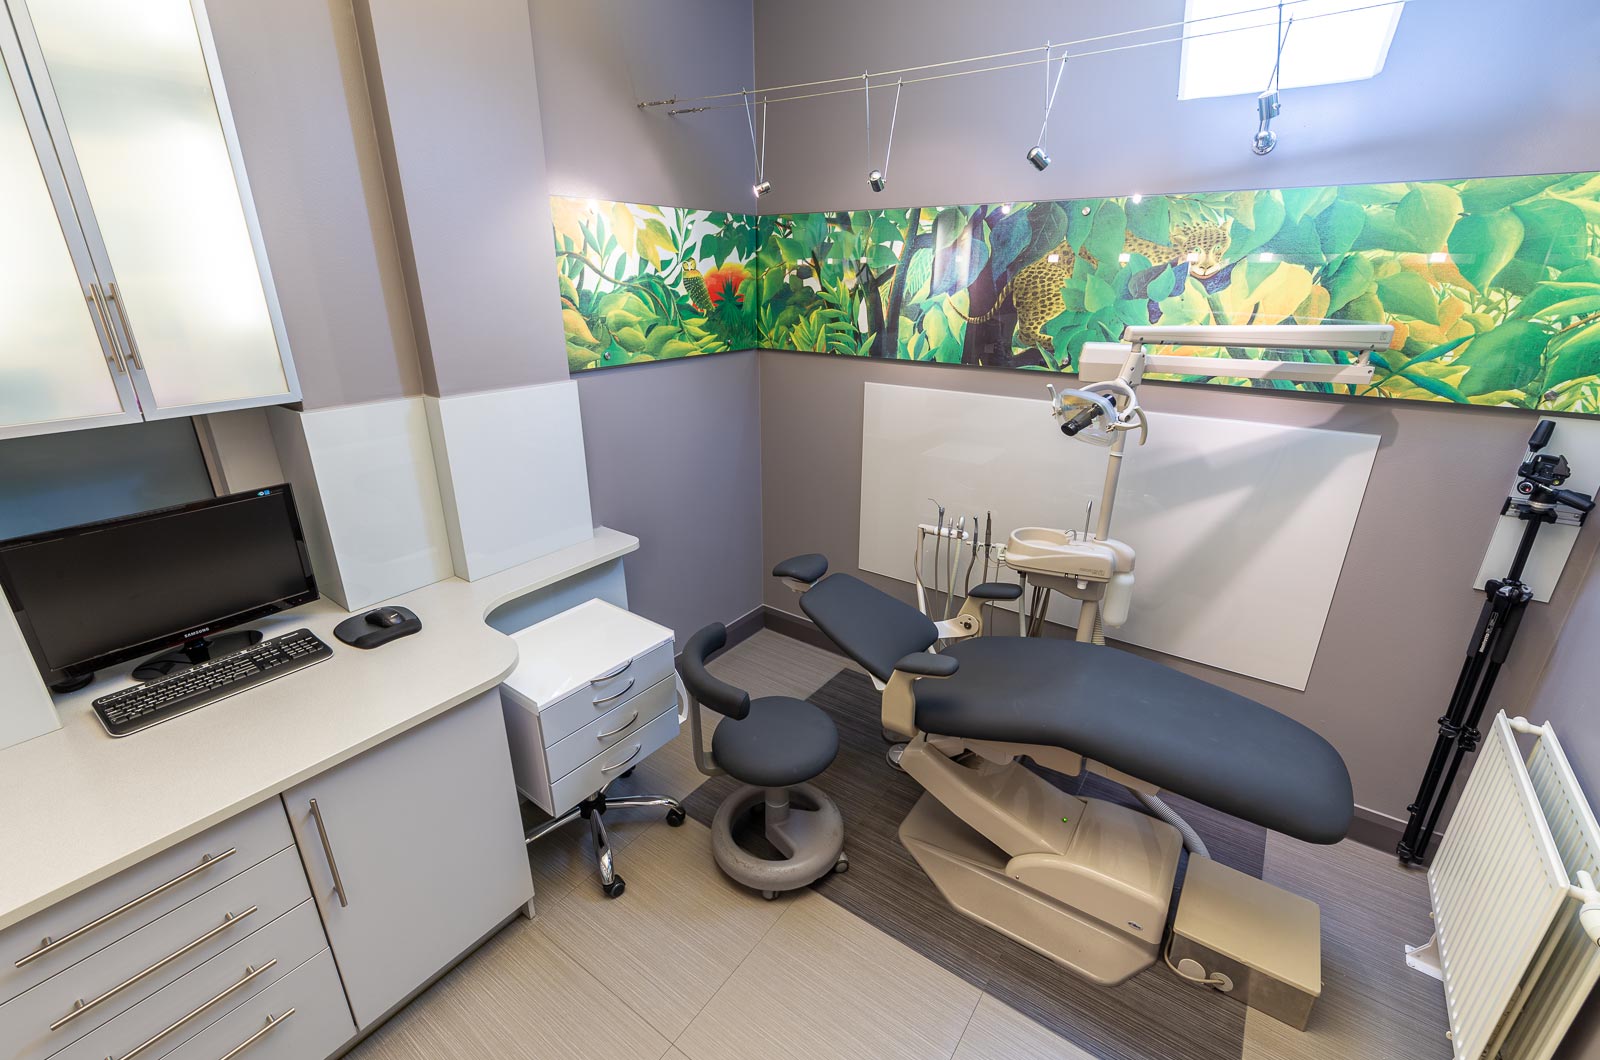 Nasza klinika – galeria zdjęć. Praktyka Ortodontyczna Orthosmile, Wrocław